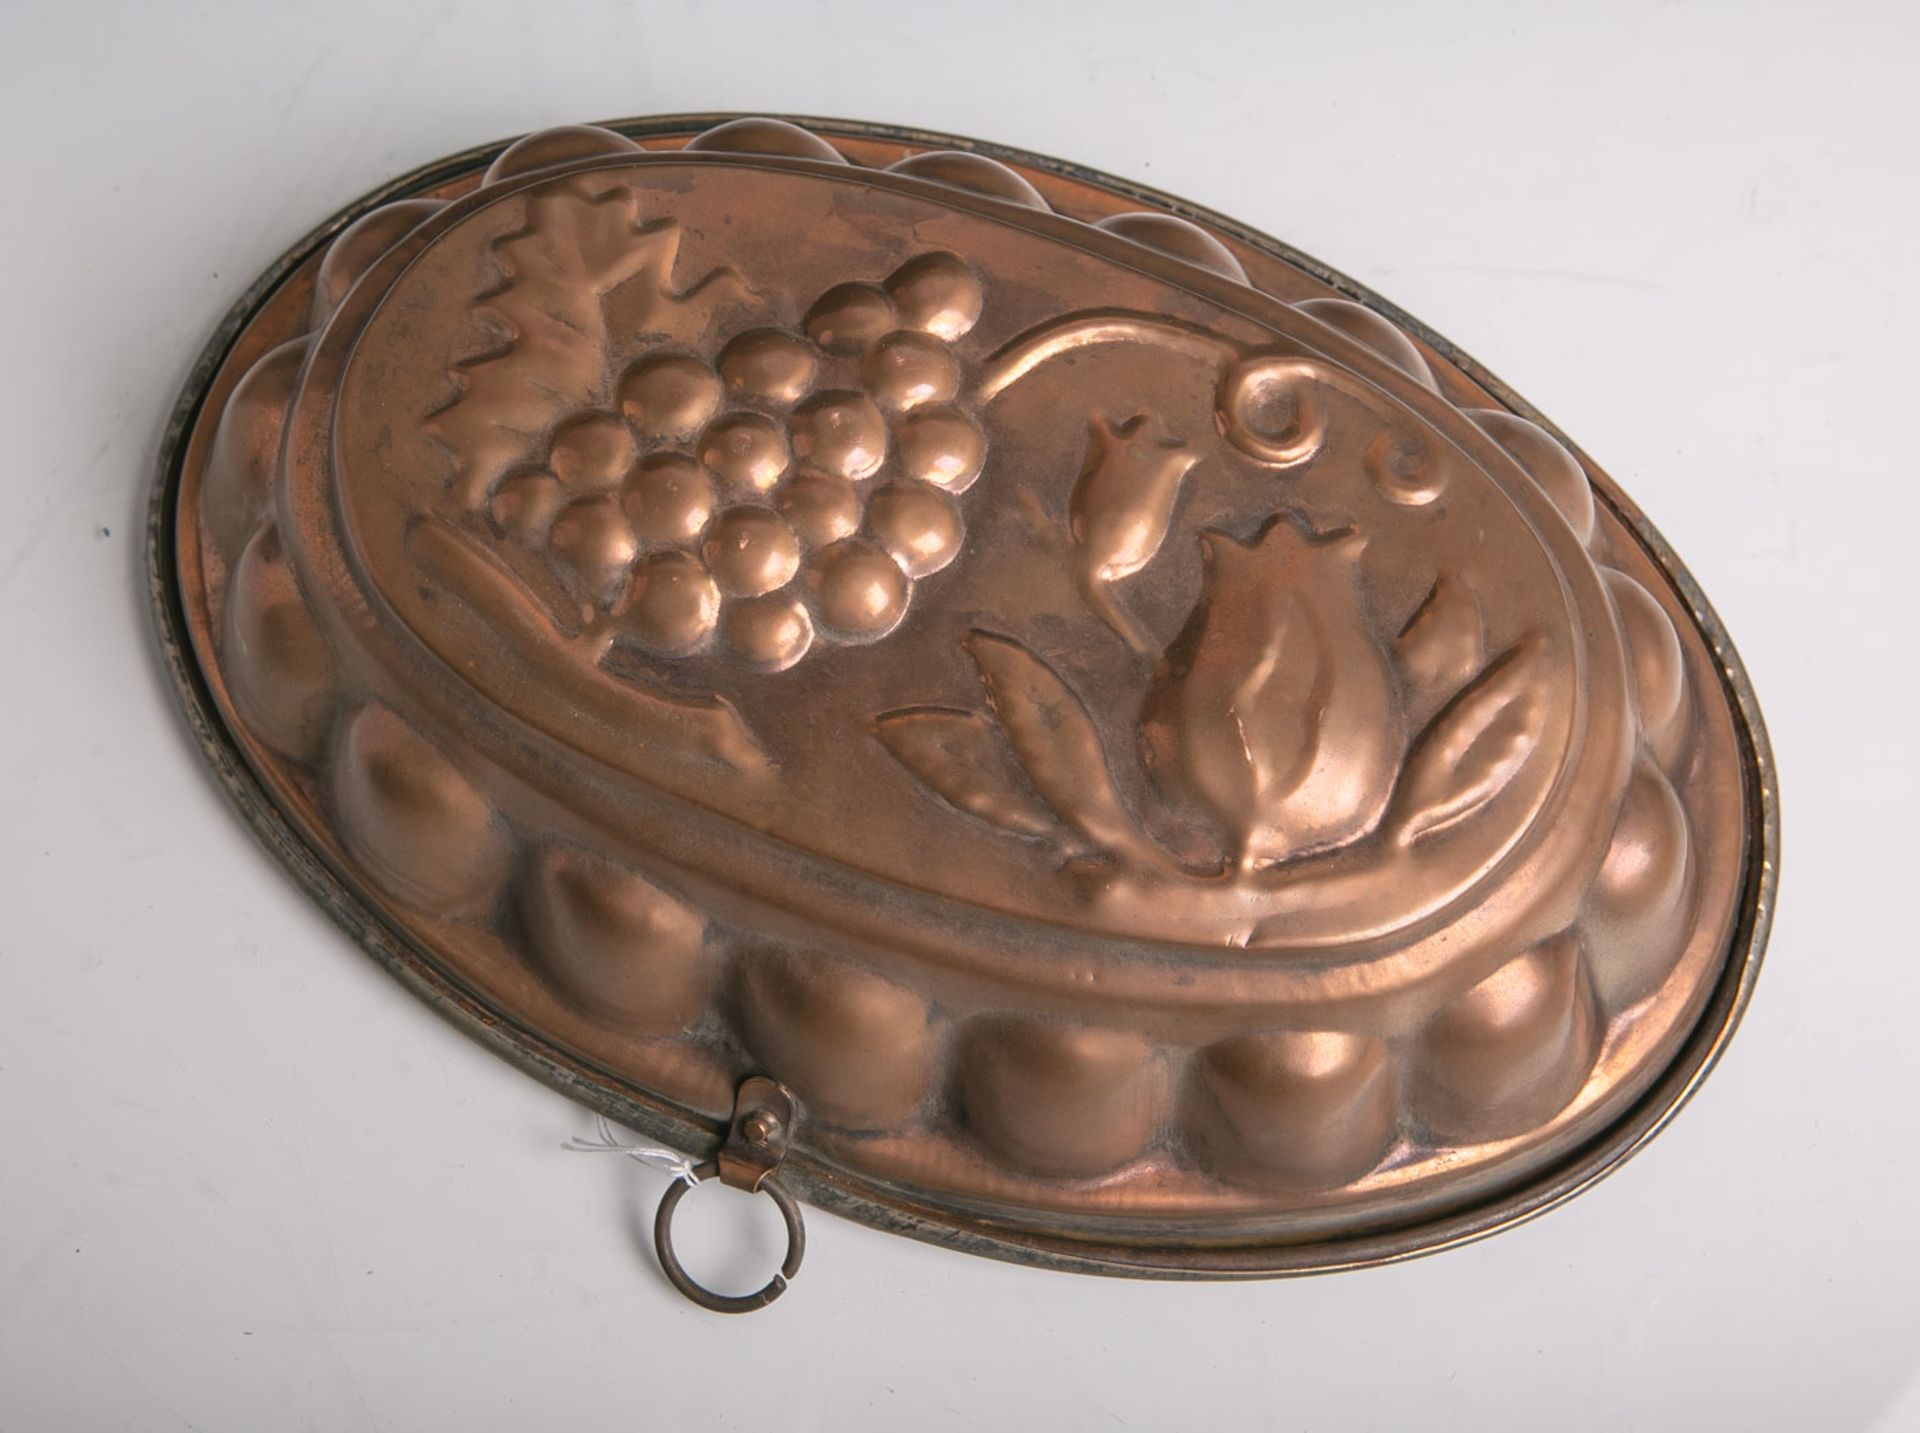 Antike ovale Backform mit Trauben und Blumenmotiven aus Kupfer hergestellt, ca. 30,5 x 21cm.